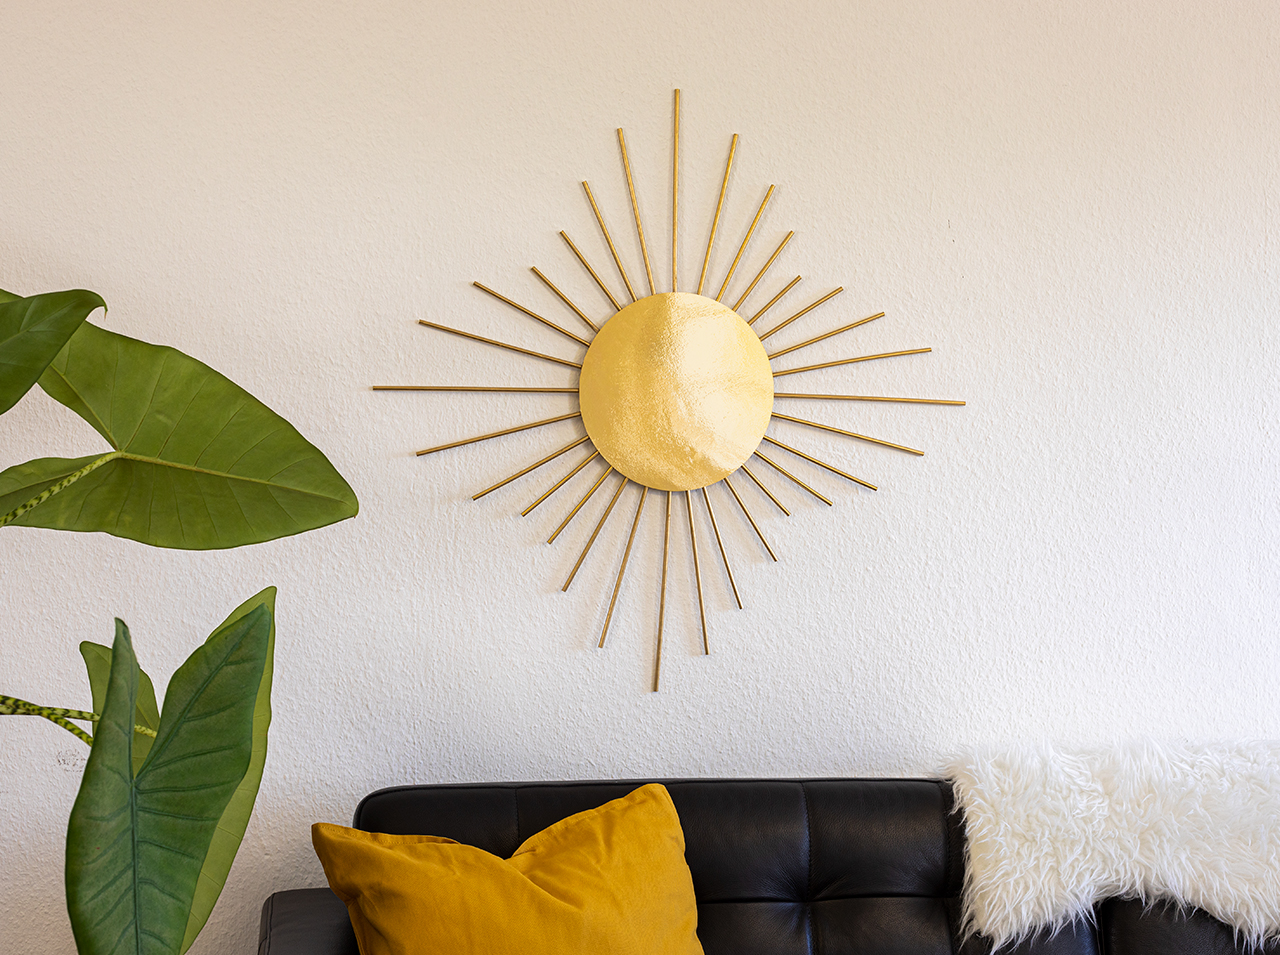 An weißer Wand hängt ein Spiegel in der Optik einer Sonne mit Kreis aus goldfarbener Spiegelfolie und goldenen Holzstäben rundherum.